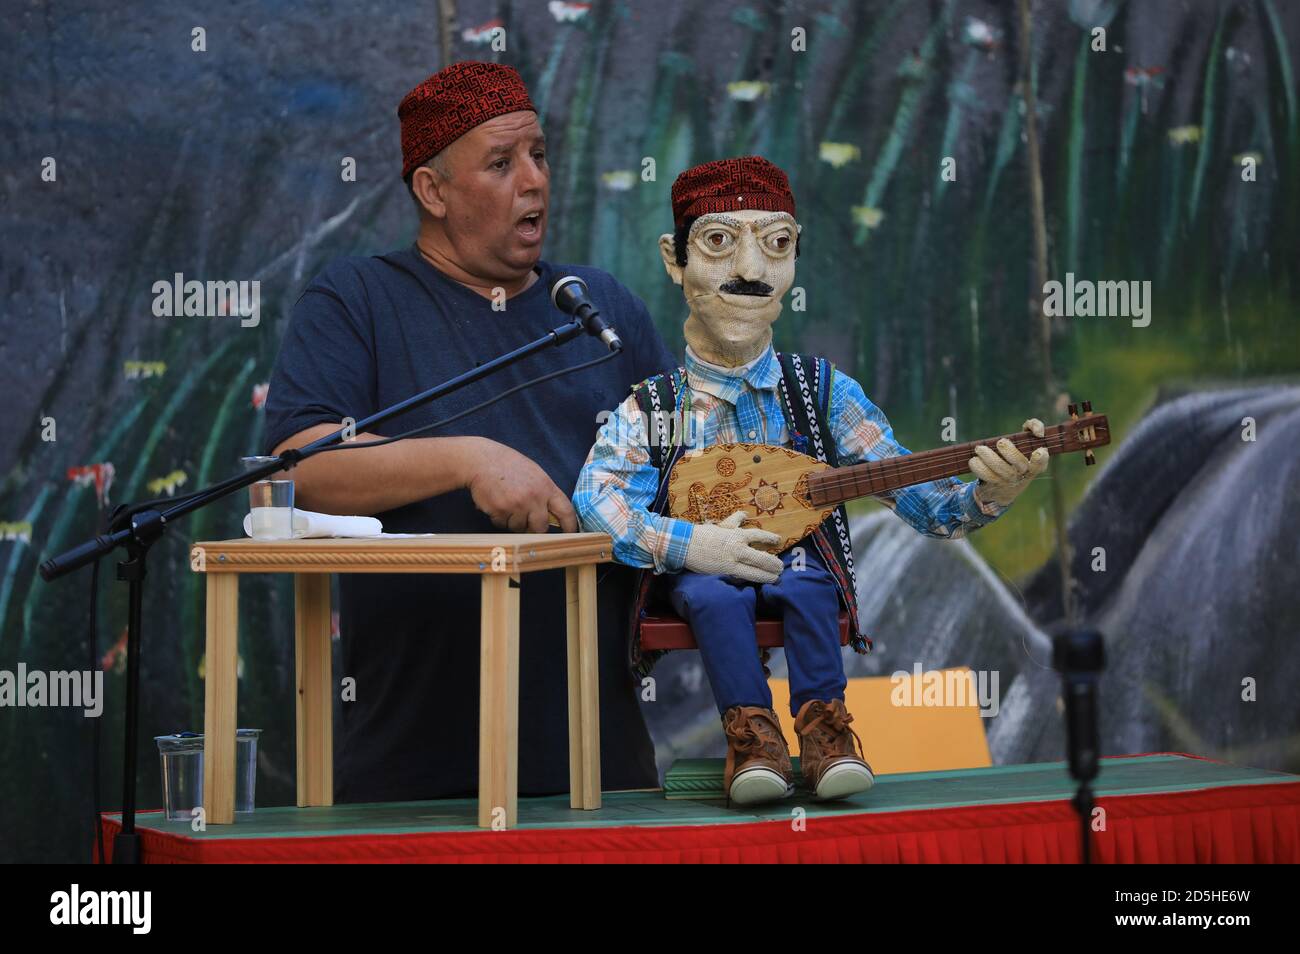 Hebron. 13 ottobre 2020. Un artista palestinese preforma uno spettacolo musicale di marionette con canzoni tradizionali palestinesi nella città di Hebron, in Cisgiordania, il 13 ottobre 2020. Credit: Mamoun Wazwaz/Xinhua/Alamy Live News Foto Stock